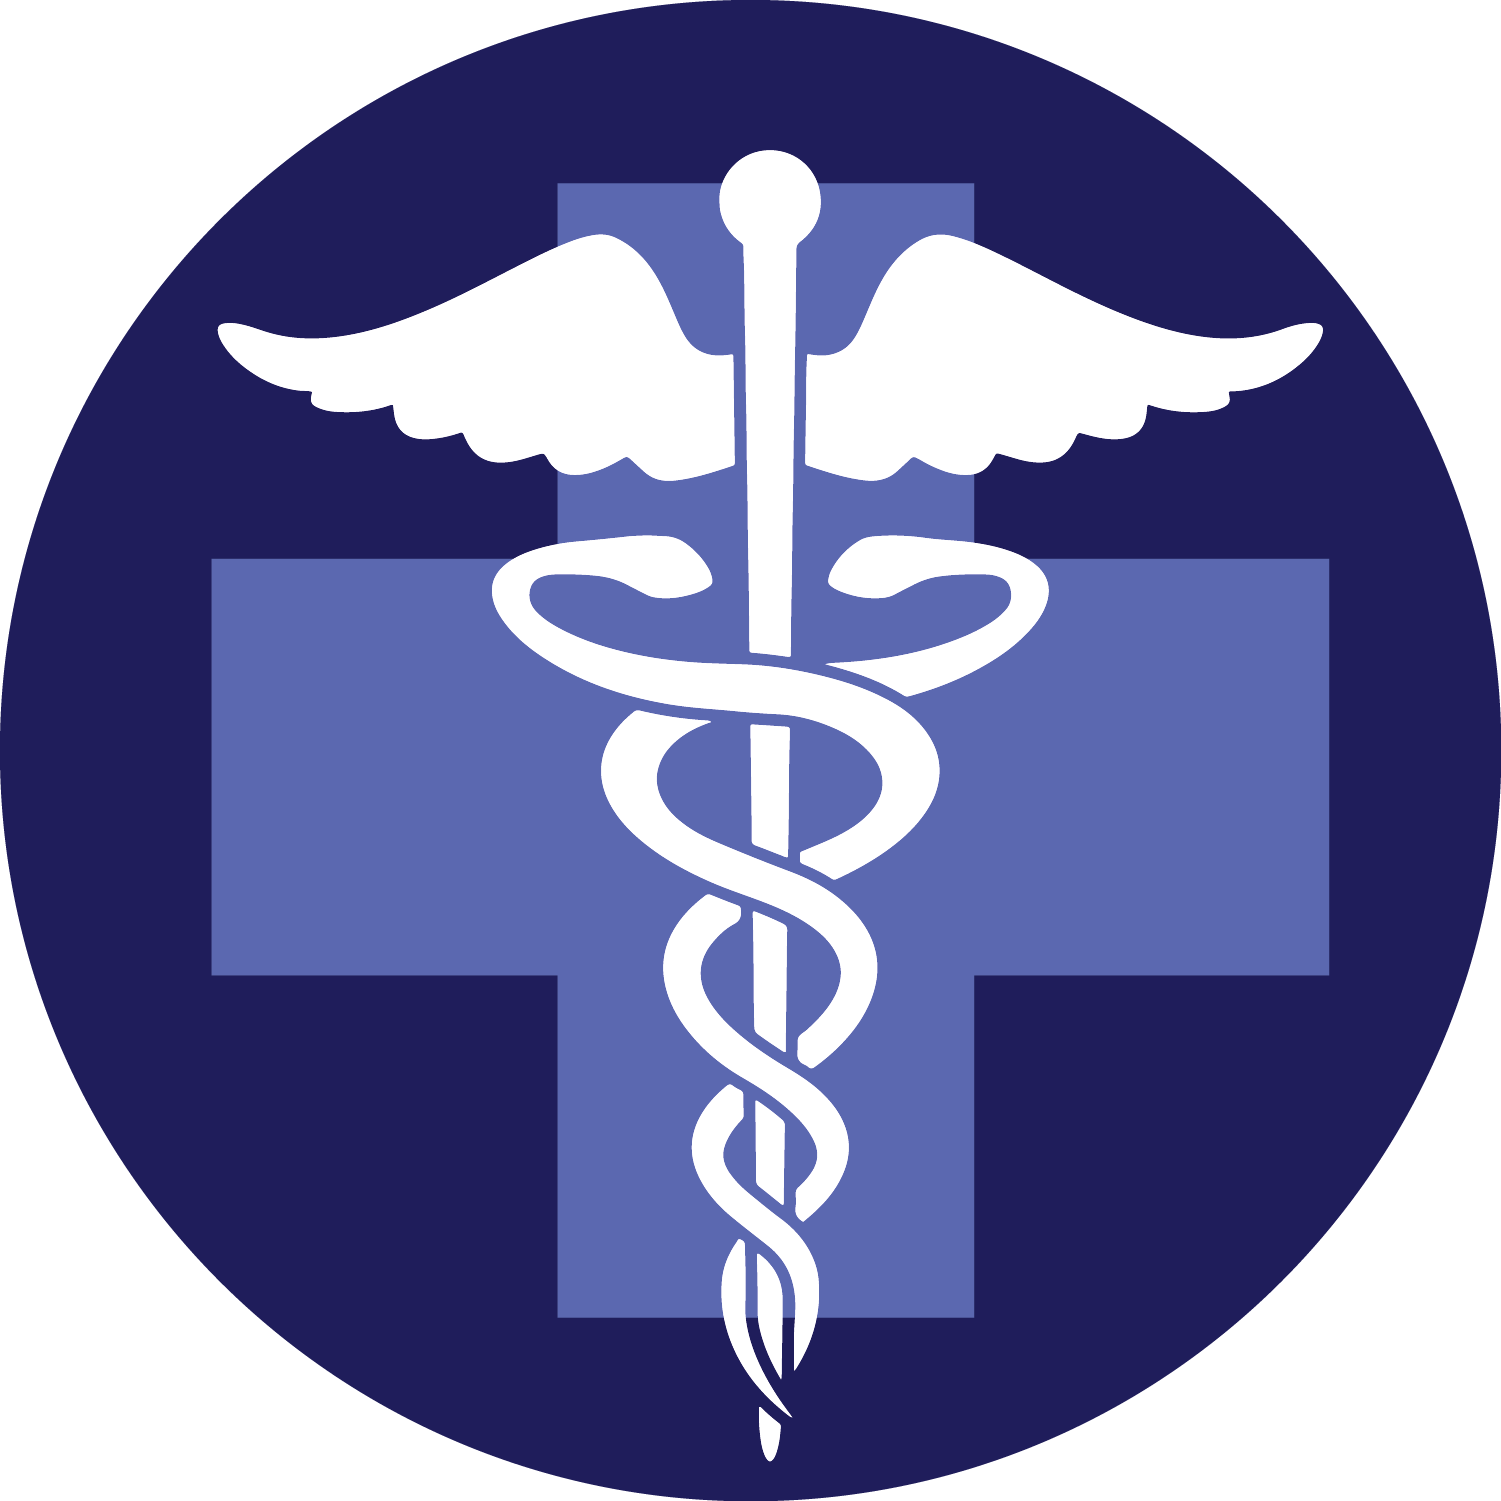 Медицина символ. Символ медицины. Медицинские символы. Логотип медицины. Значок здравоохранения.